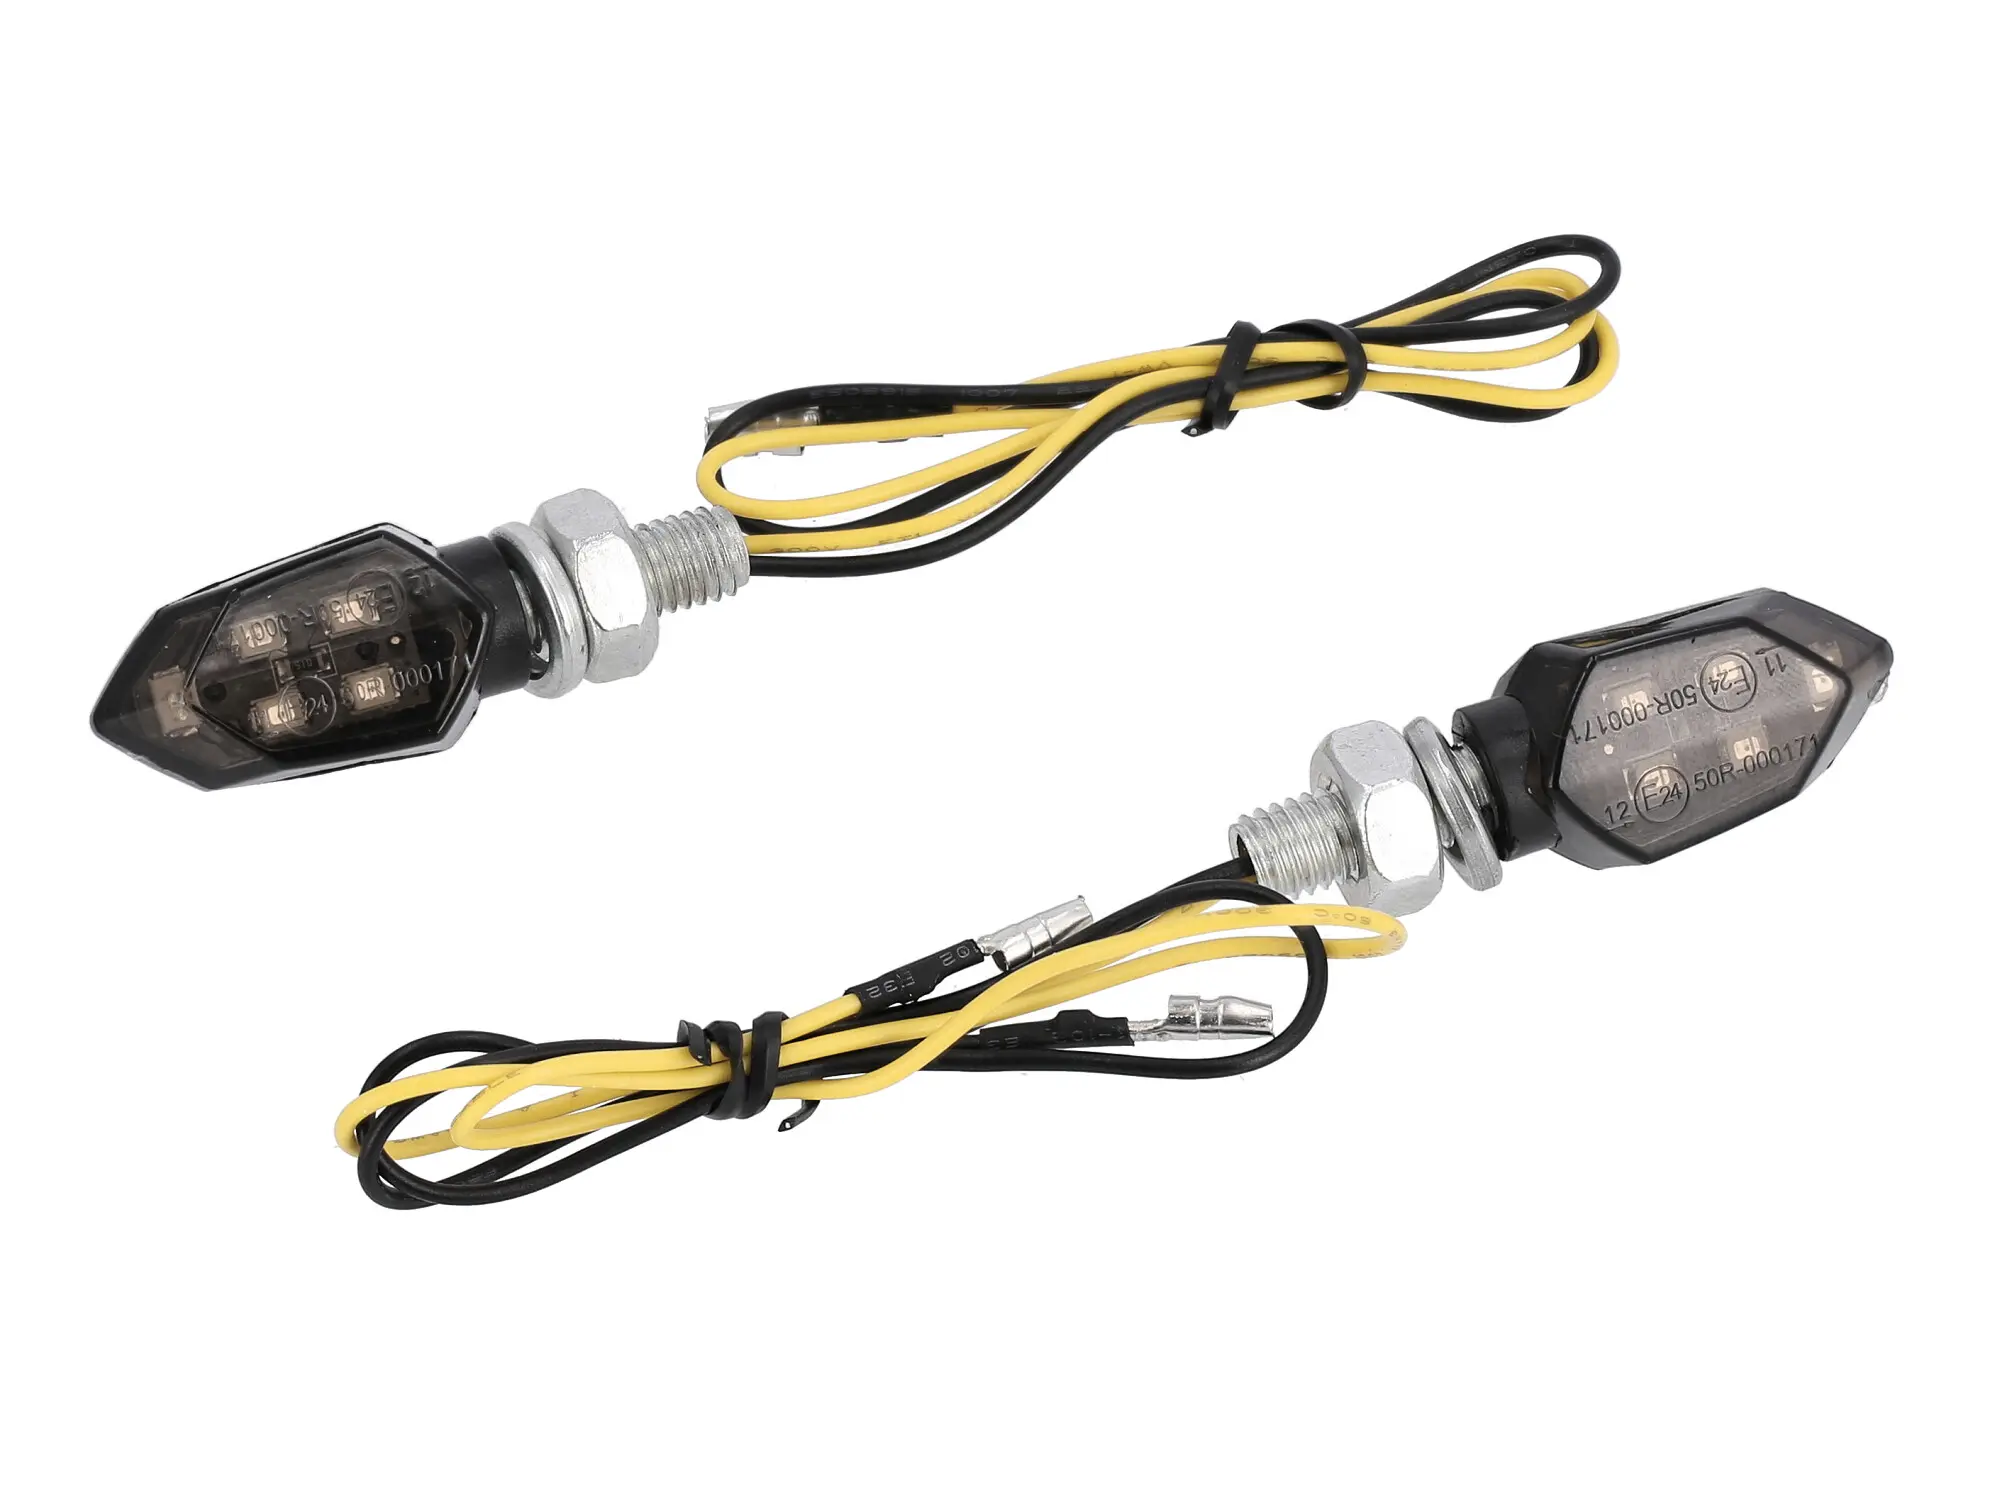 Set: 2x Mini-Blinker 12V LED - für Moped und Motorrad, Art.-Nr.: 10073076 - Bild 1